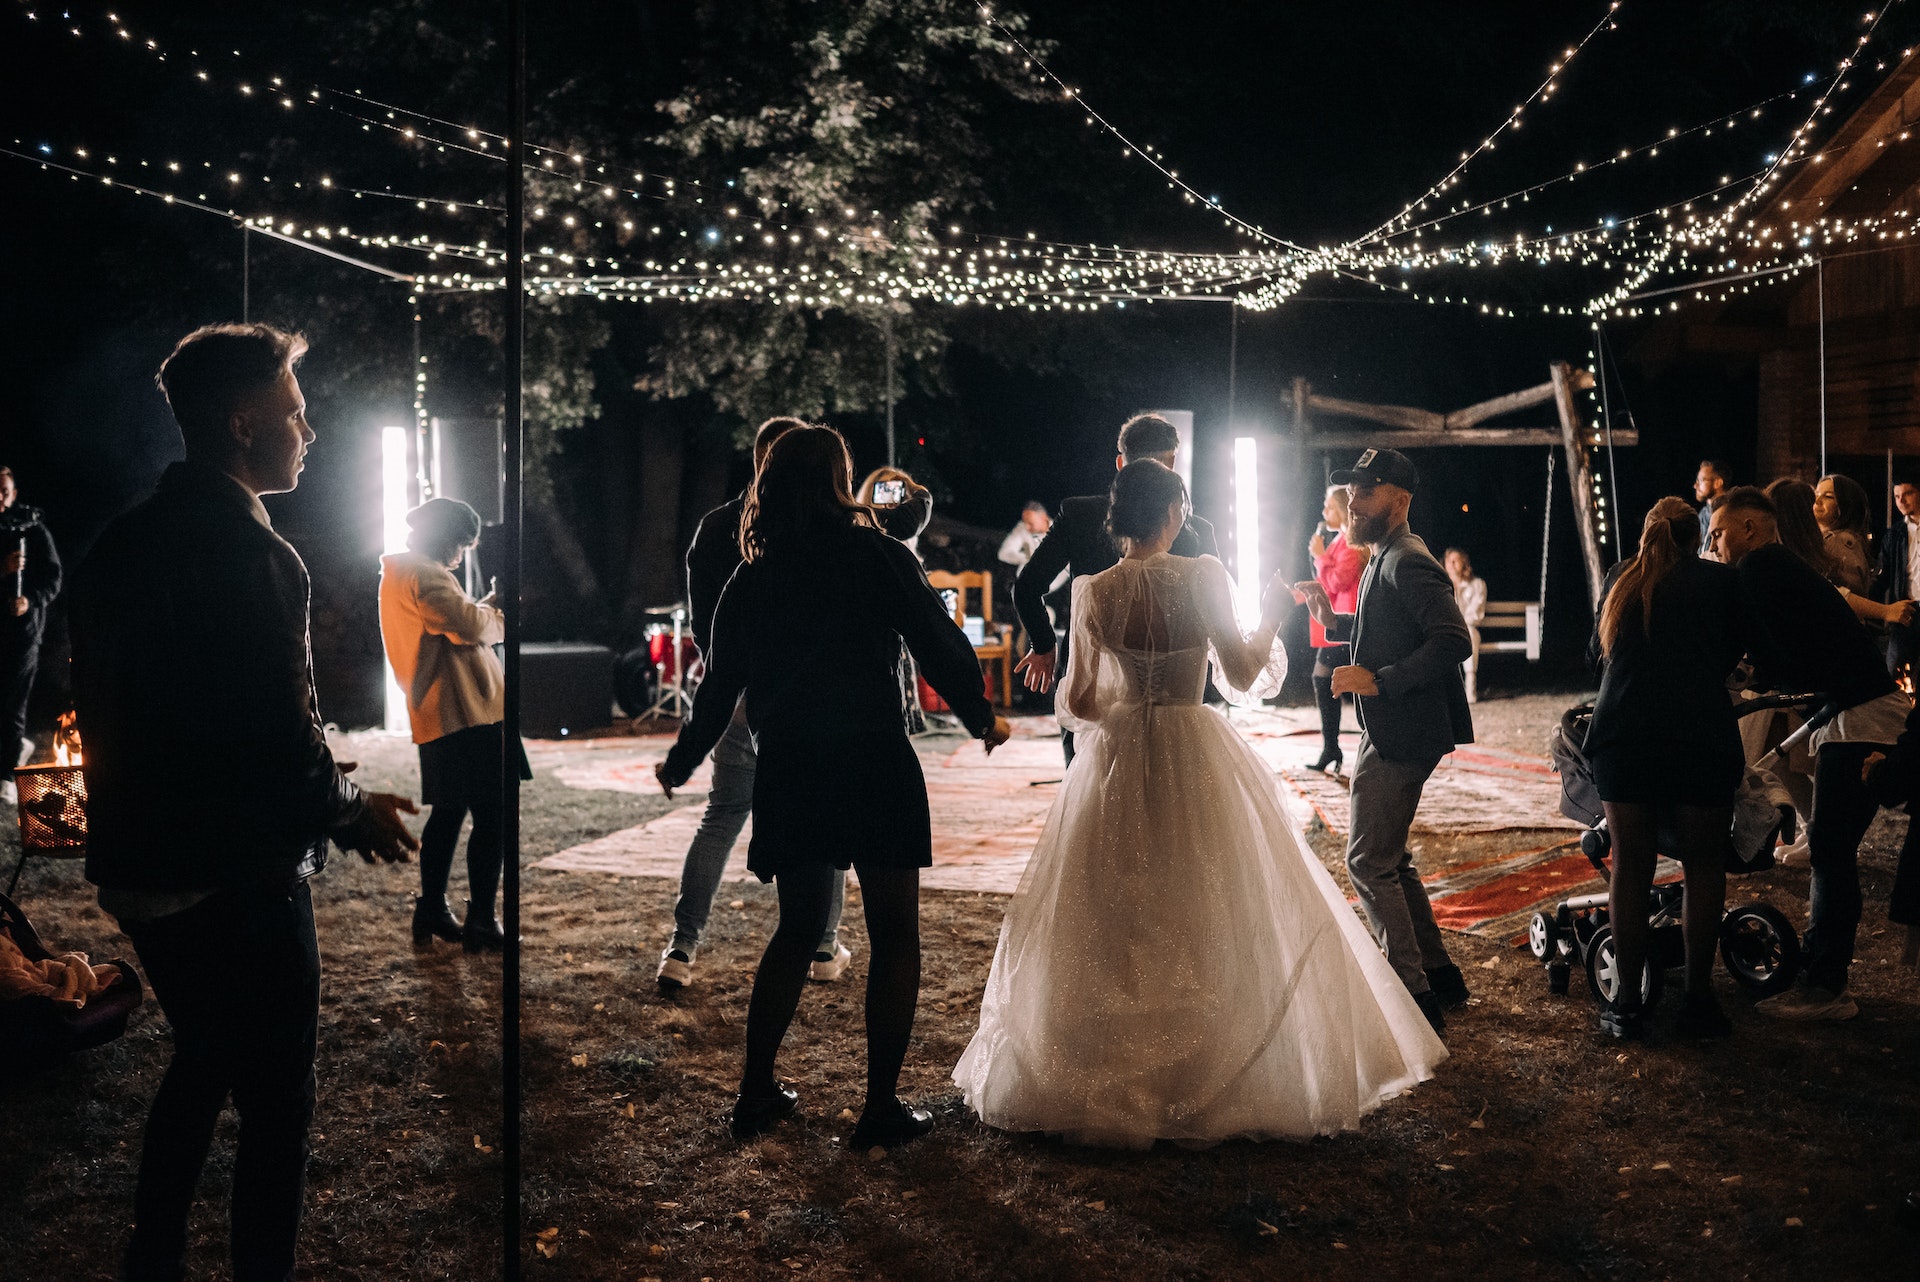 Invitados bailando con la novia en su boda | Fuente: Pexels